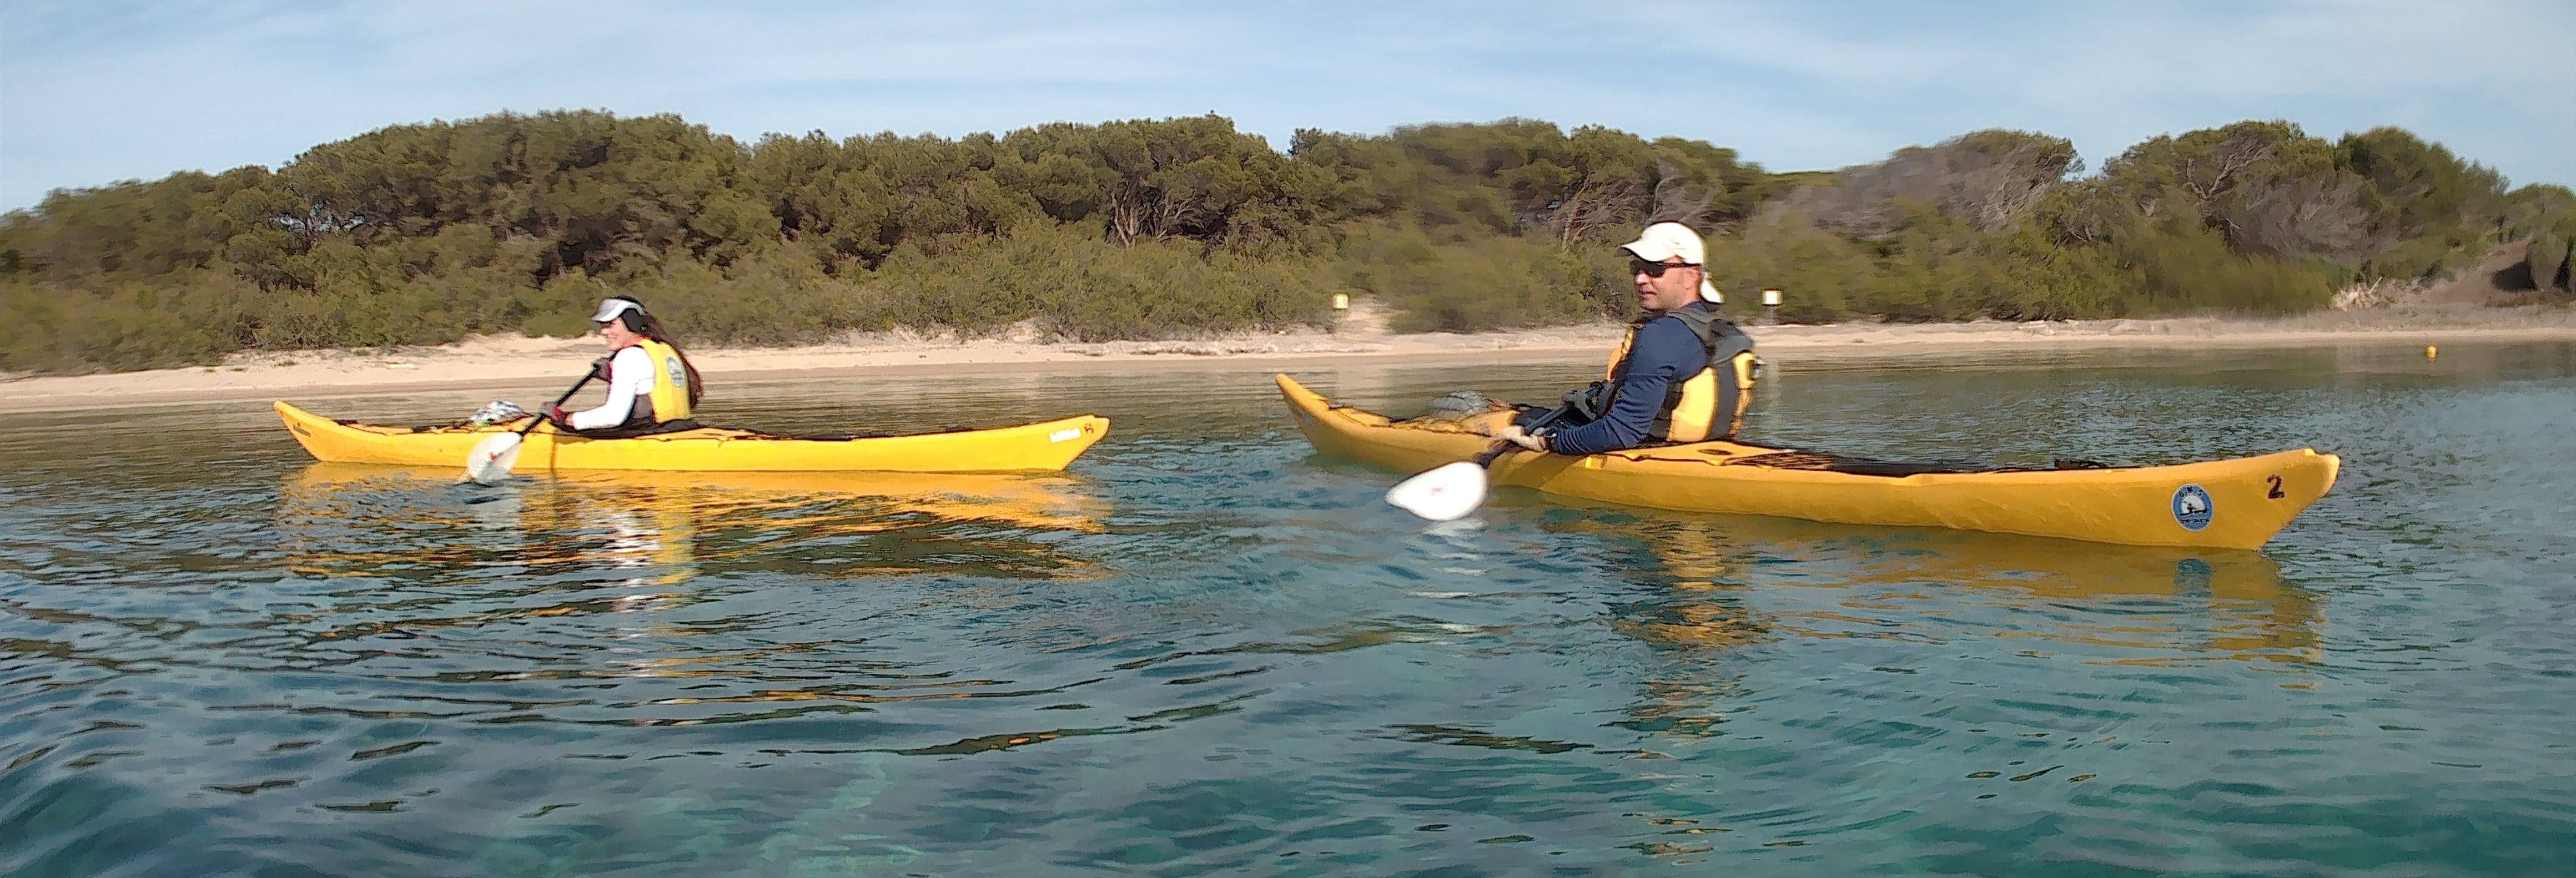 Tour del sud di Minorca in kayak